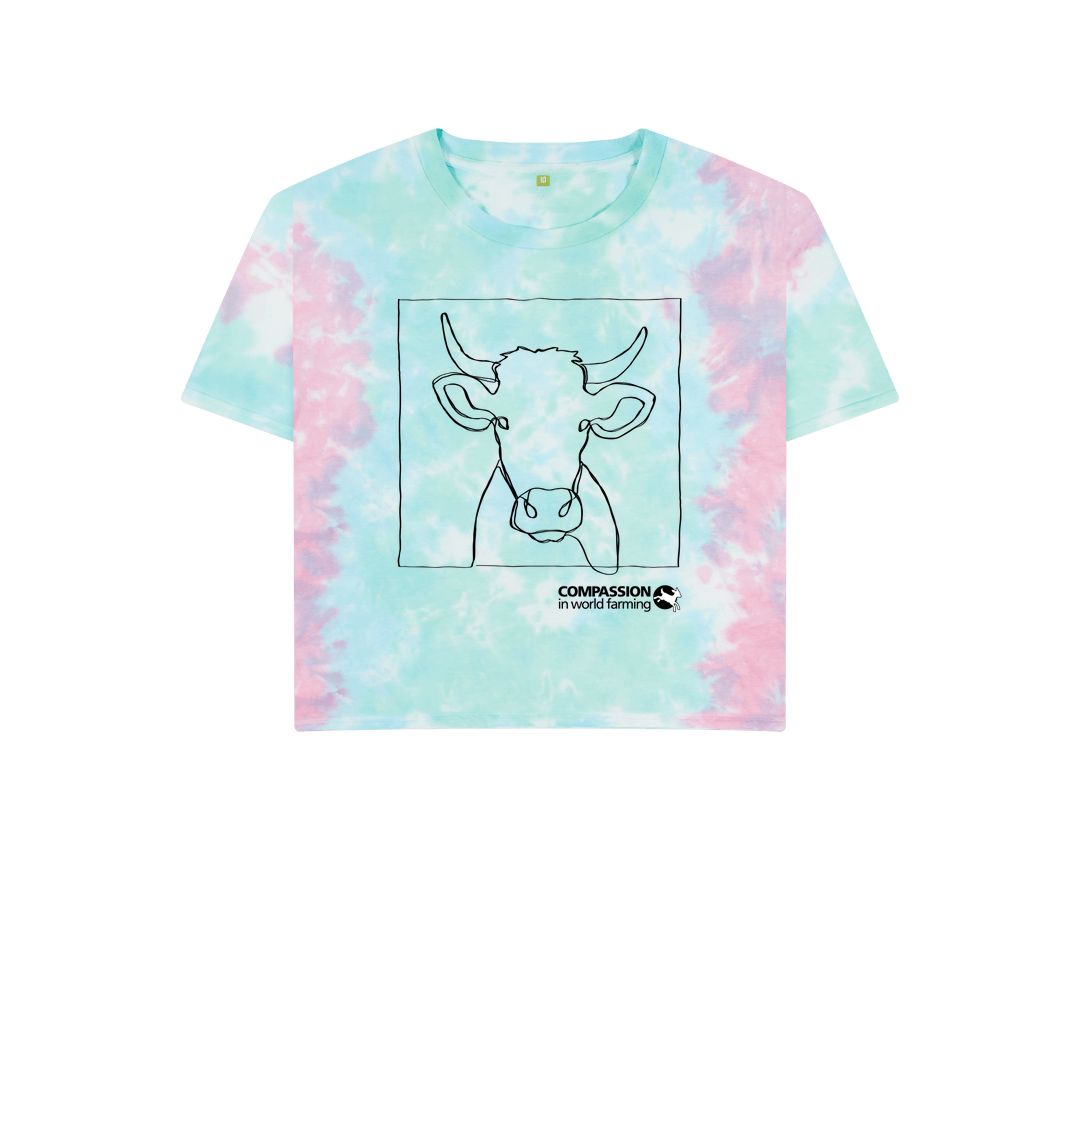 Pastel Tie Dye Women's Cow Boxy T-shirt